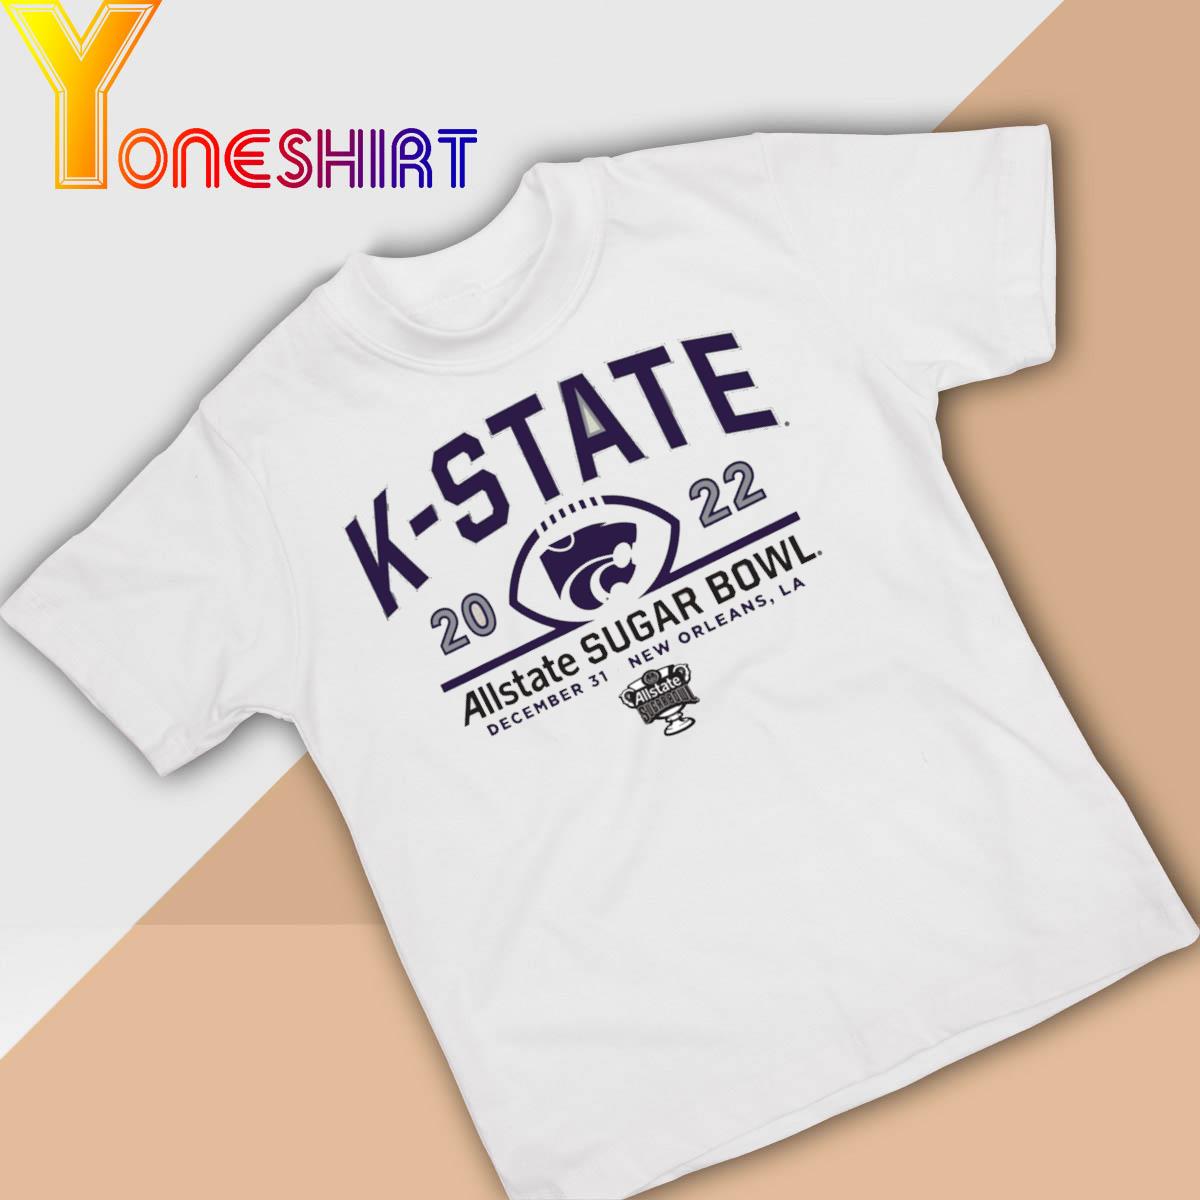 K-State Allstate Sugar Bowl 2022 shirt